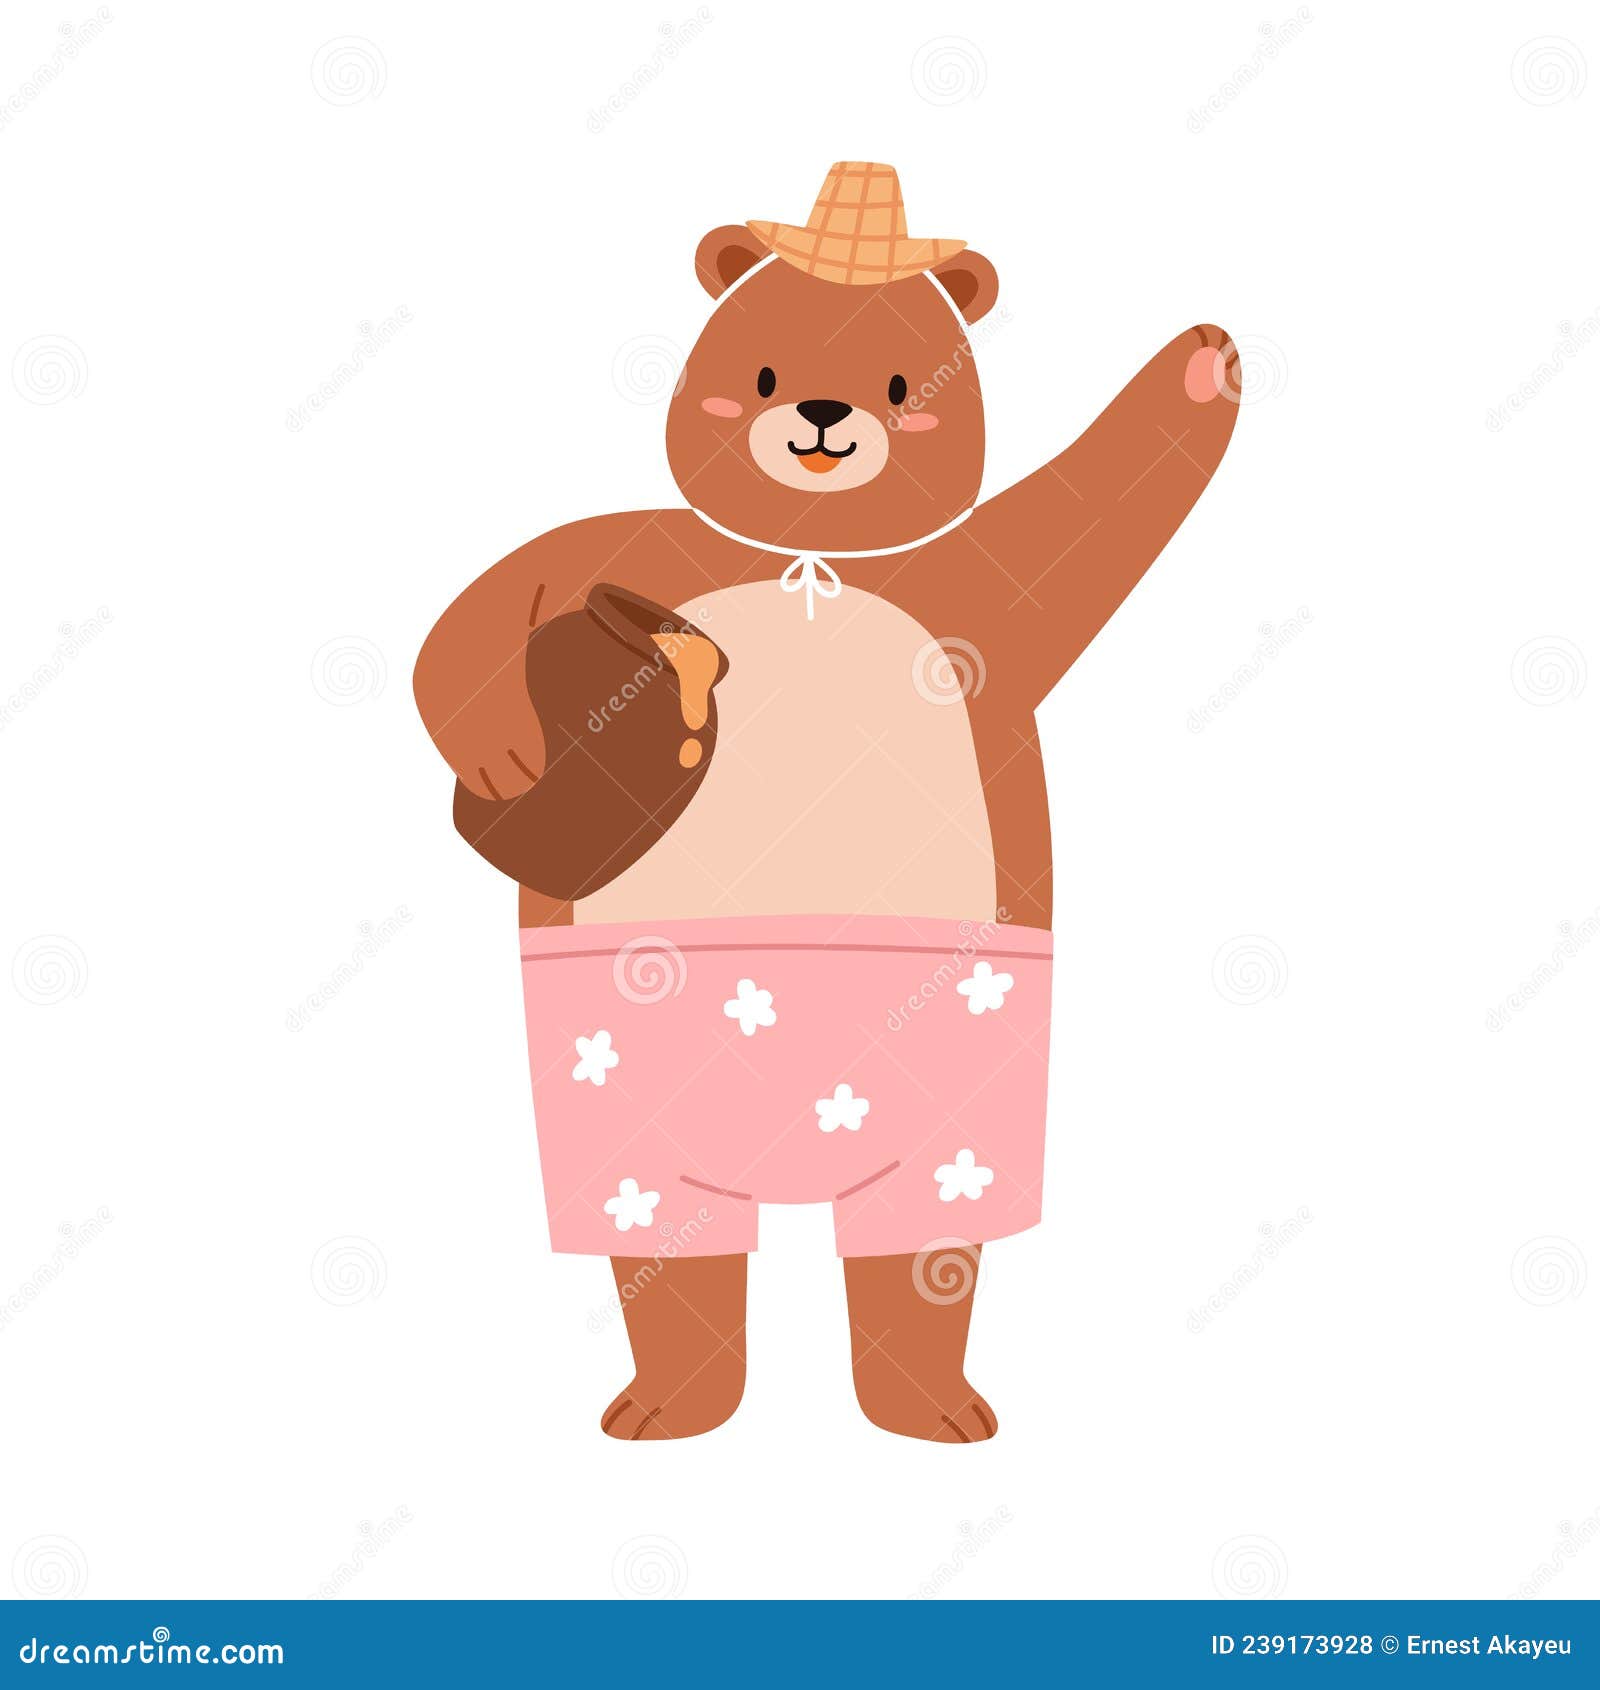 Sombrero de paja de oso para bebé niño